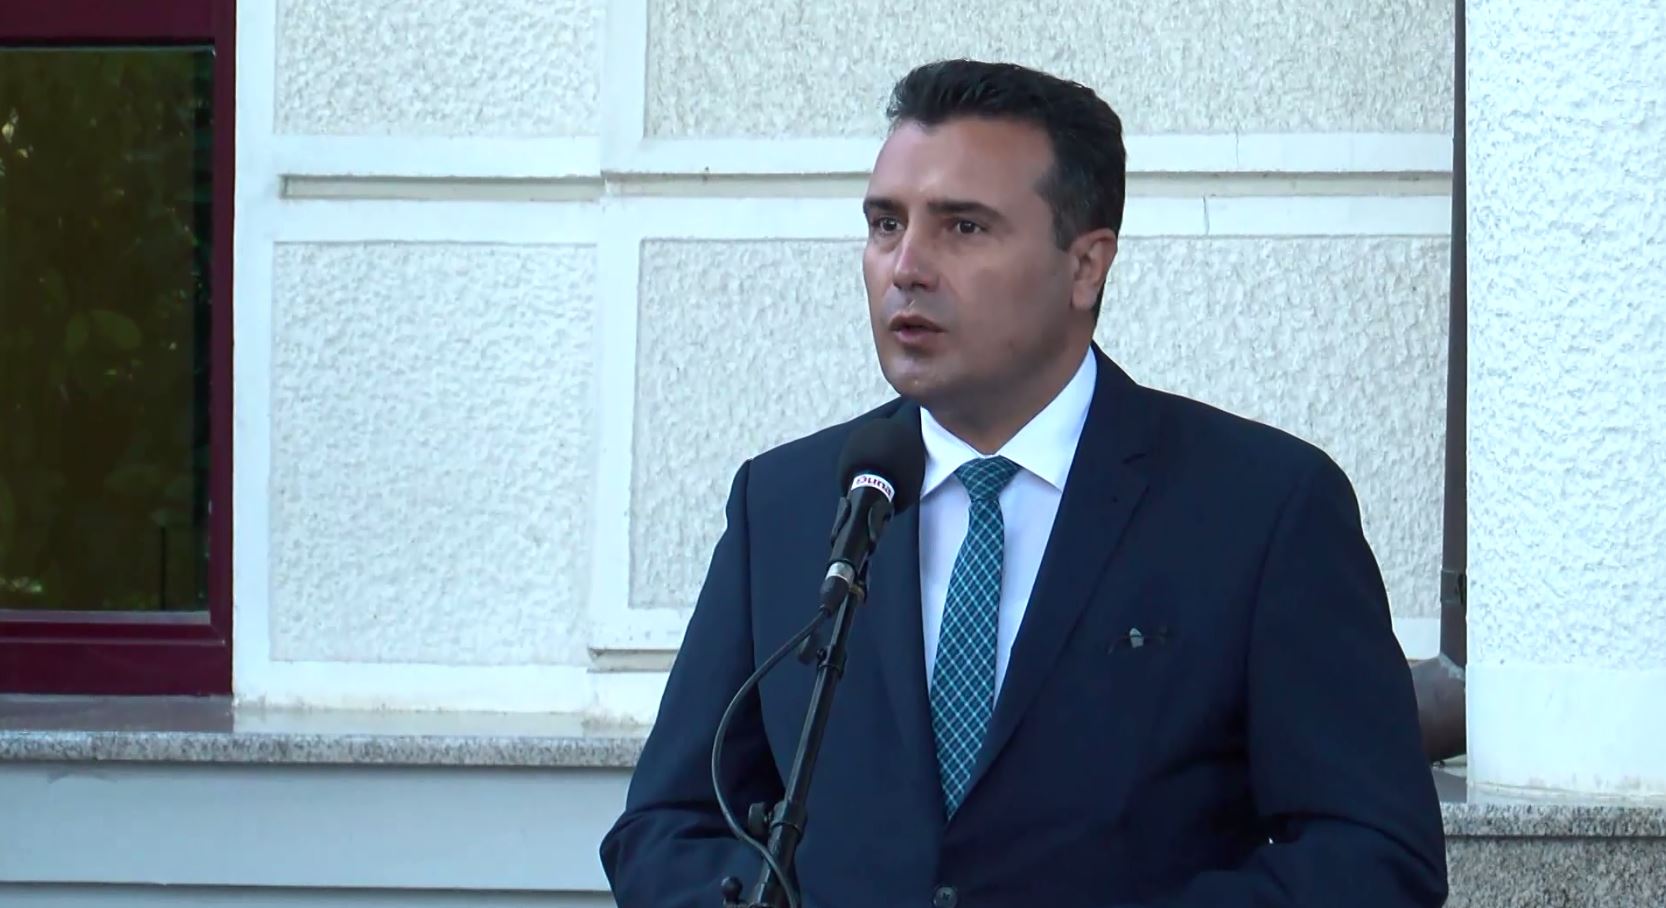 Başbakan Zaev, Cumhurbaşkanı Pendarovski’nin açıklamalarını “uygunsuz” buldu